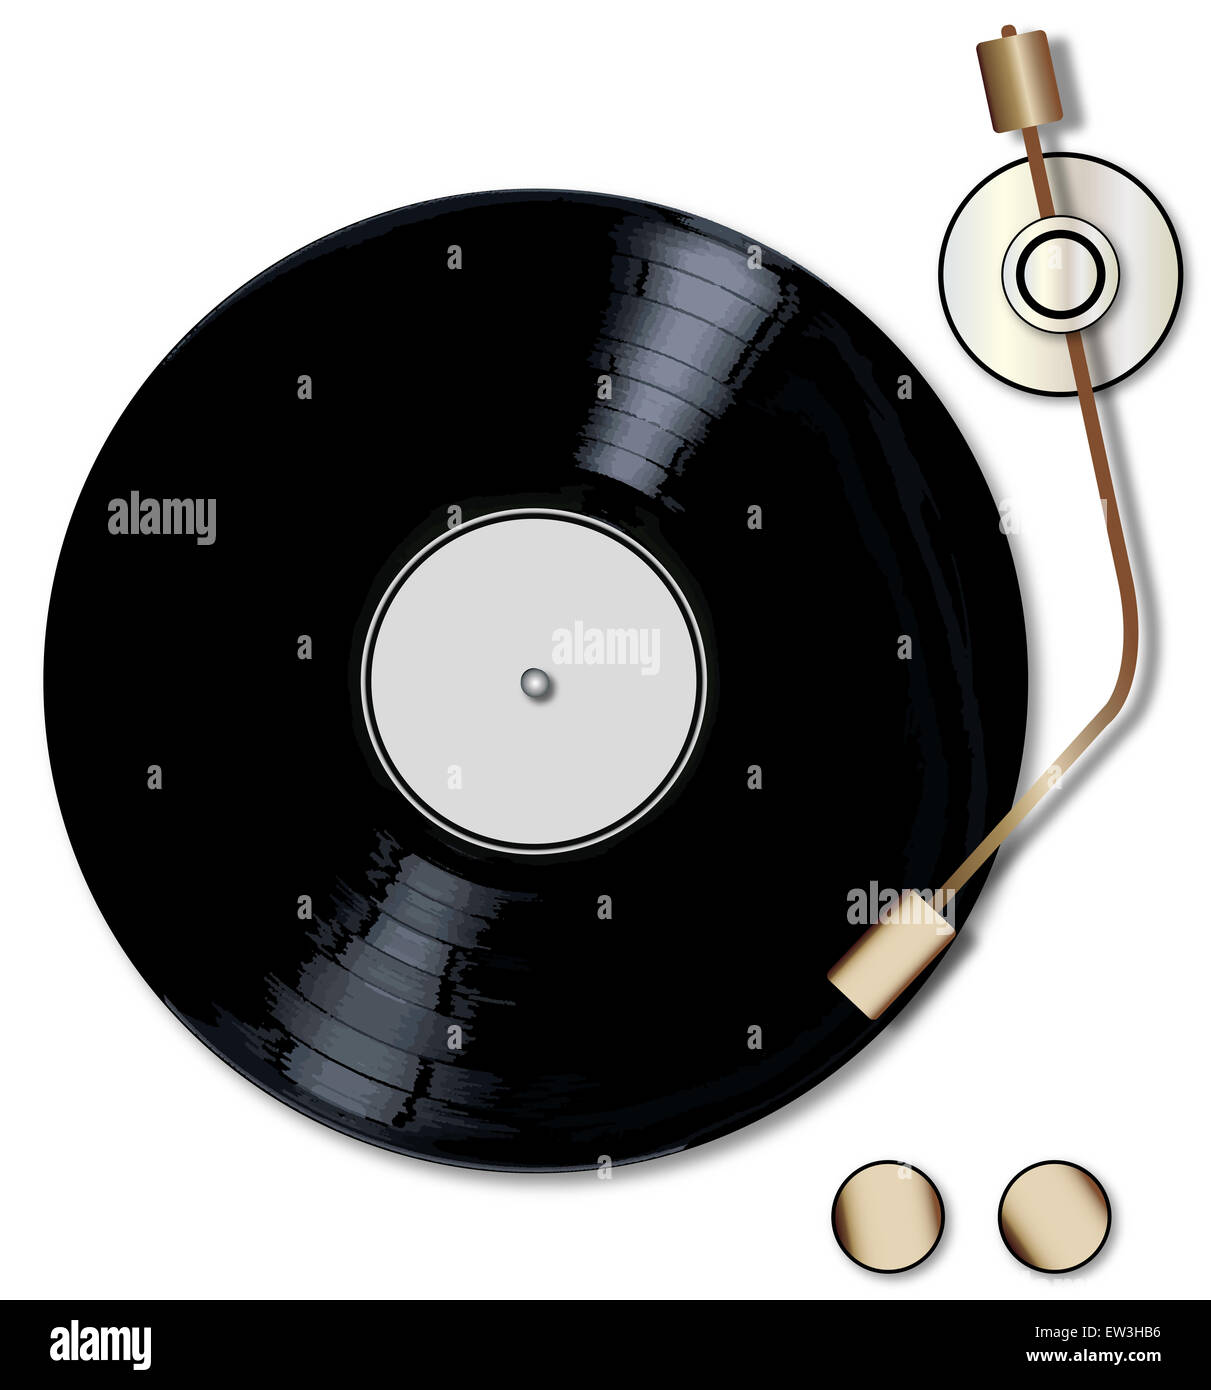 Un disque vinyle LP typique avec un blanc tournant sur un enregistrement labell player sur un fond blanc. Banque D'Images